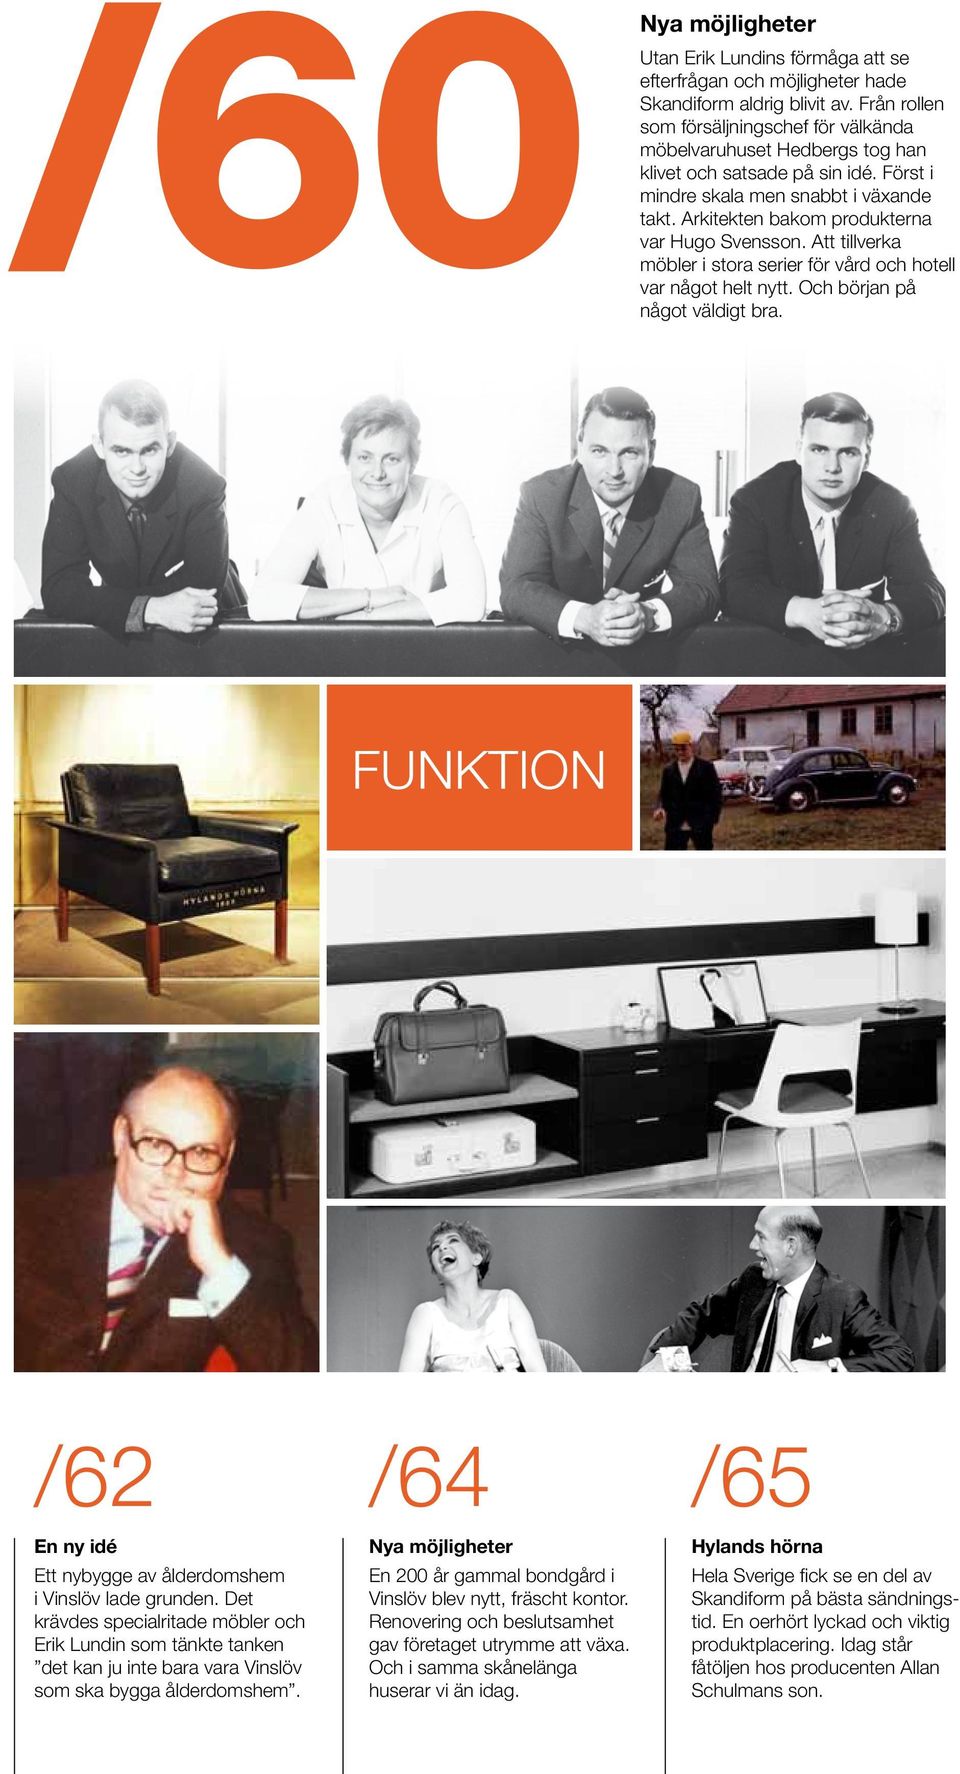 Arkitekten bakom pro dukterna var Hugo Svensson. Att till verka möbler i stora serier för vård och hotell var något helt nytt. Och början på något väldigt bra.